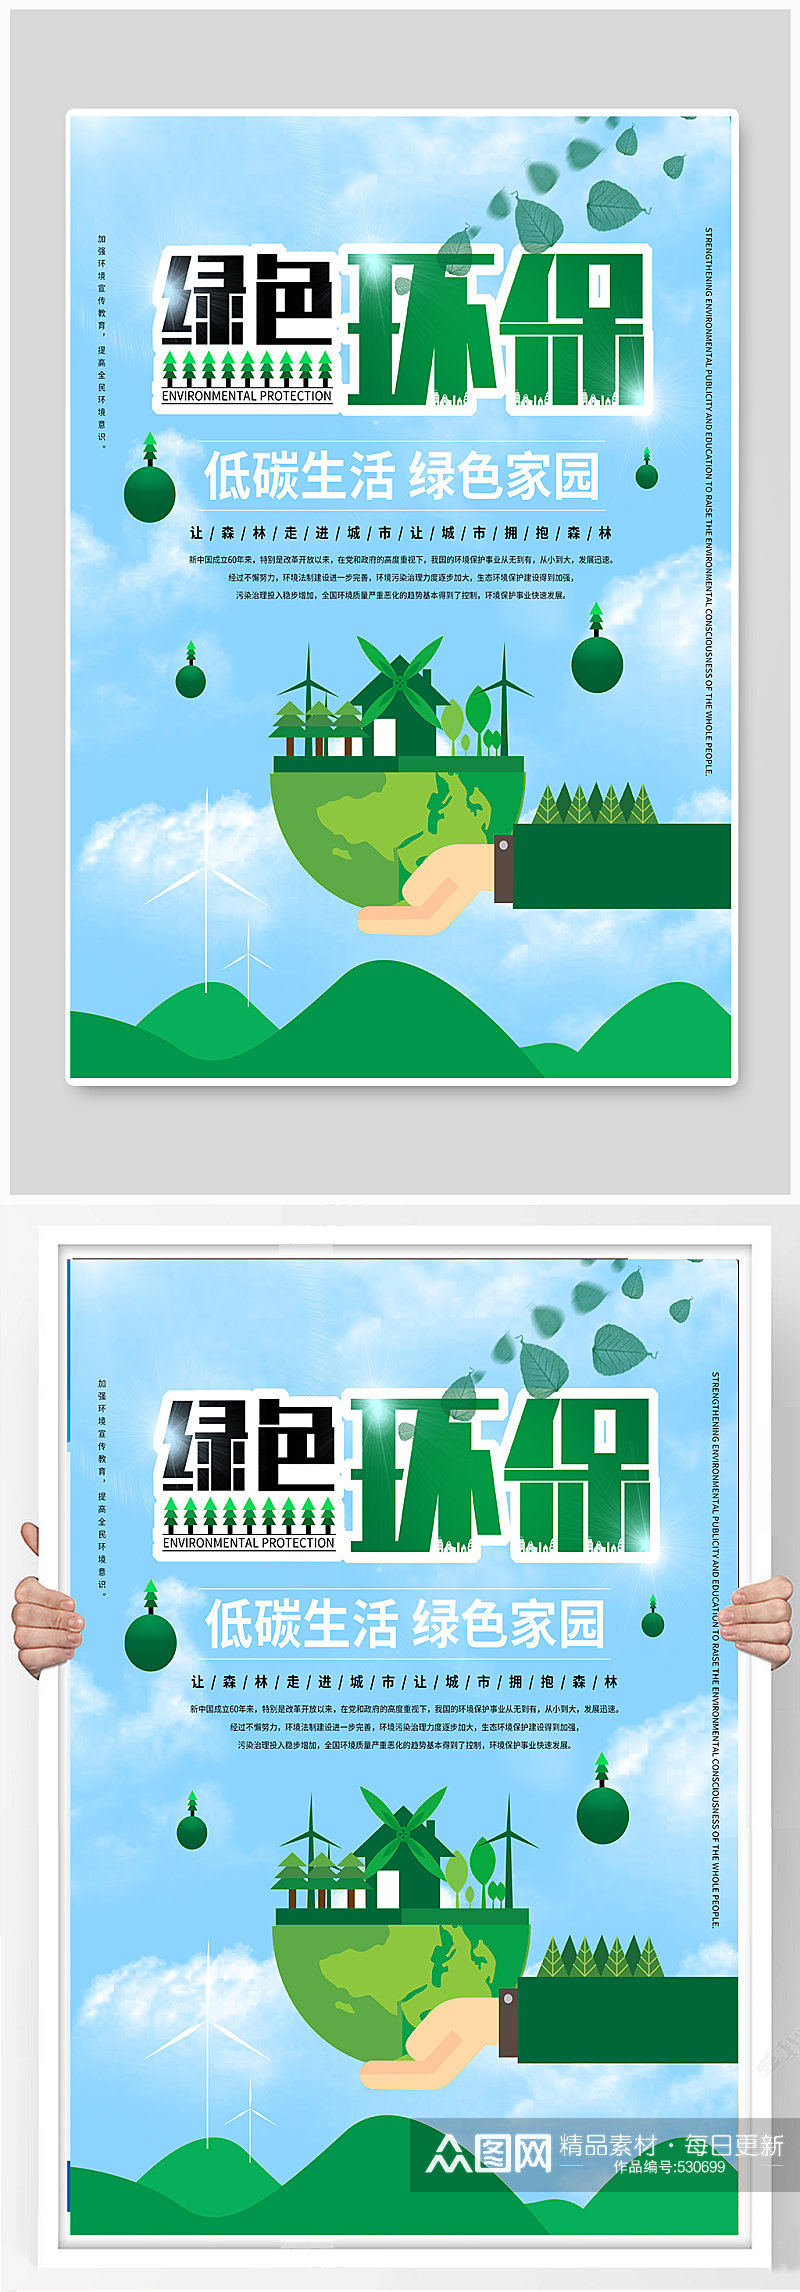 绿色环保公益宣传海报环保宣传海报素材